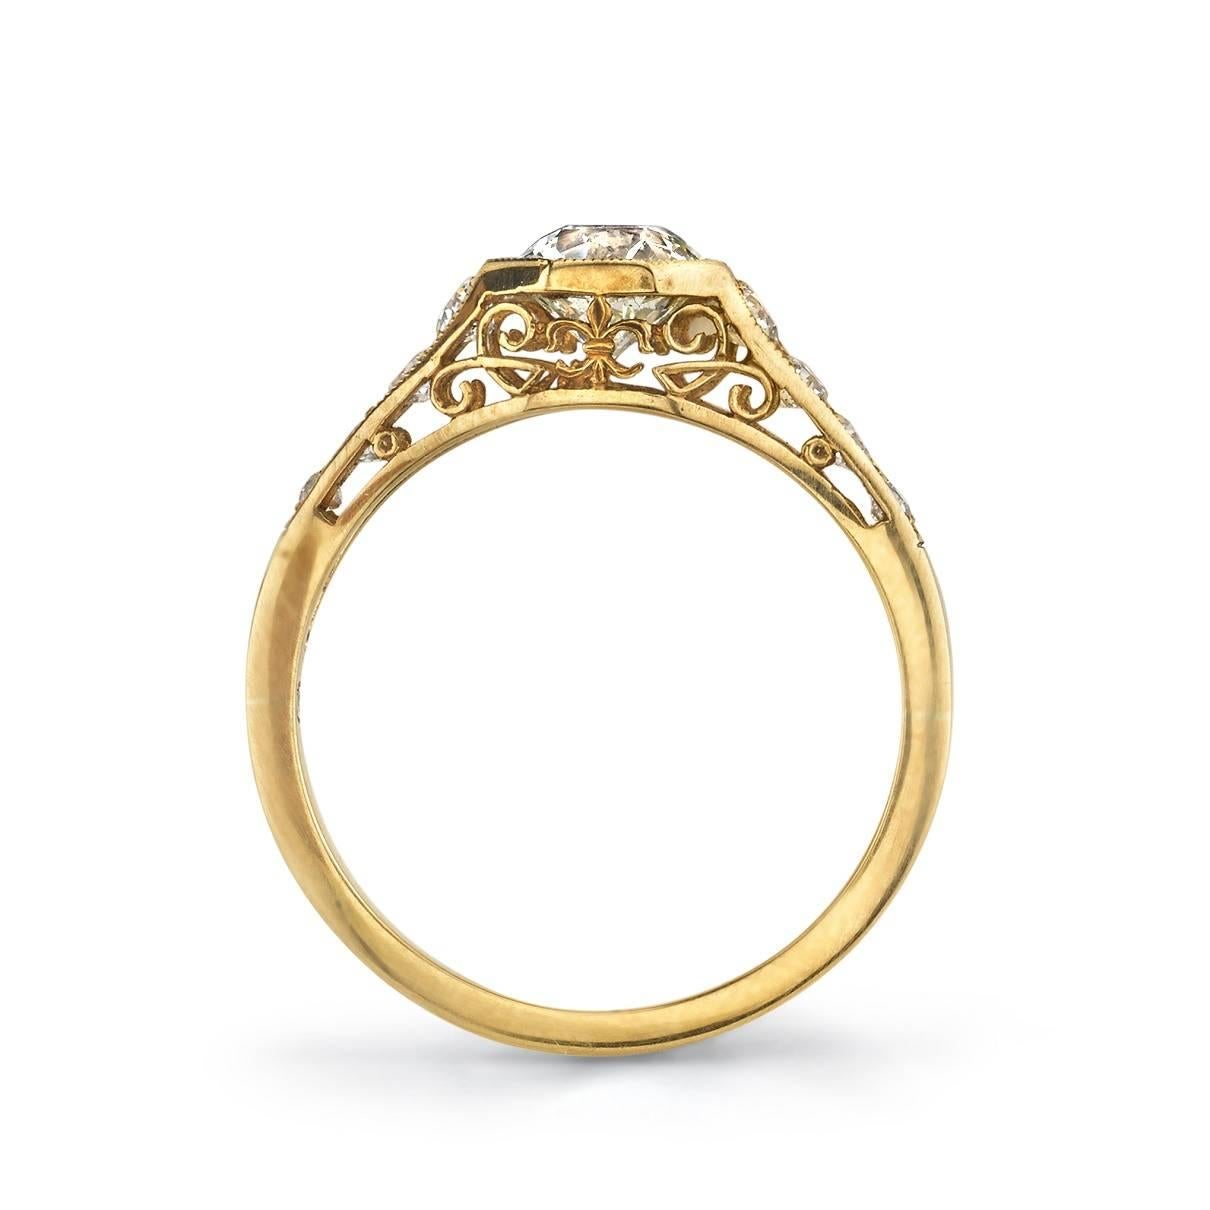 Edwardian Old European Cut Diamond oxidized yellow gold Ring